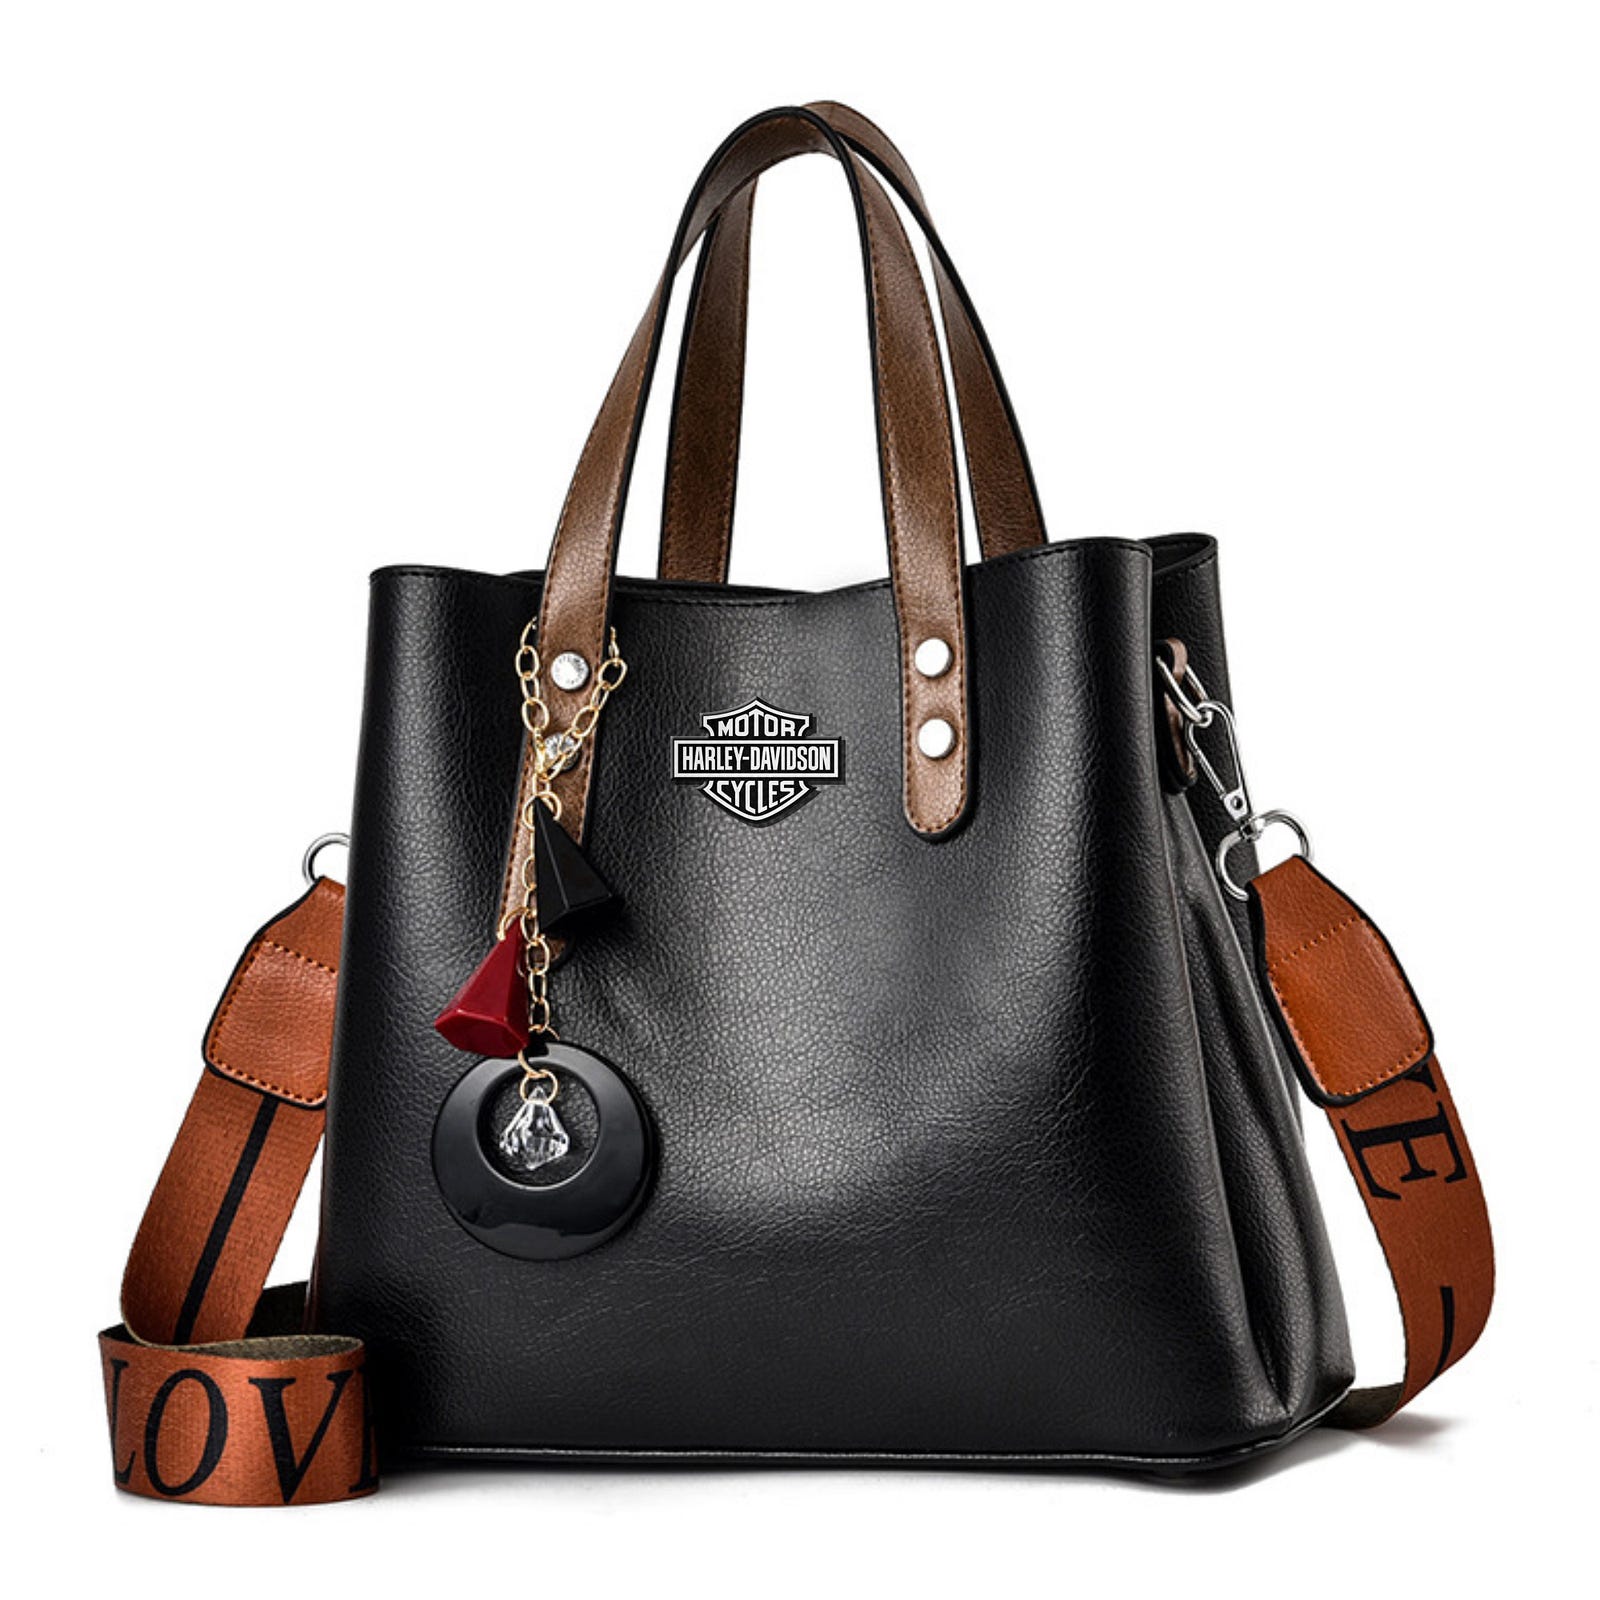 Harley Davidson New Deluxe Bags For Women - Tana Elegant